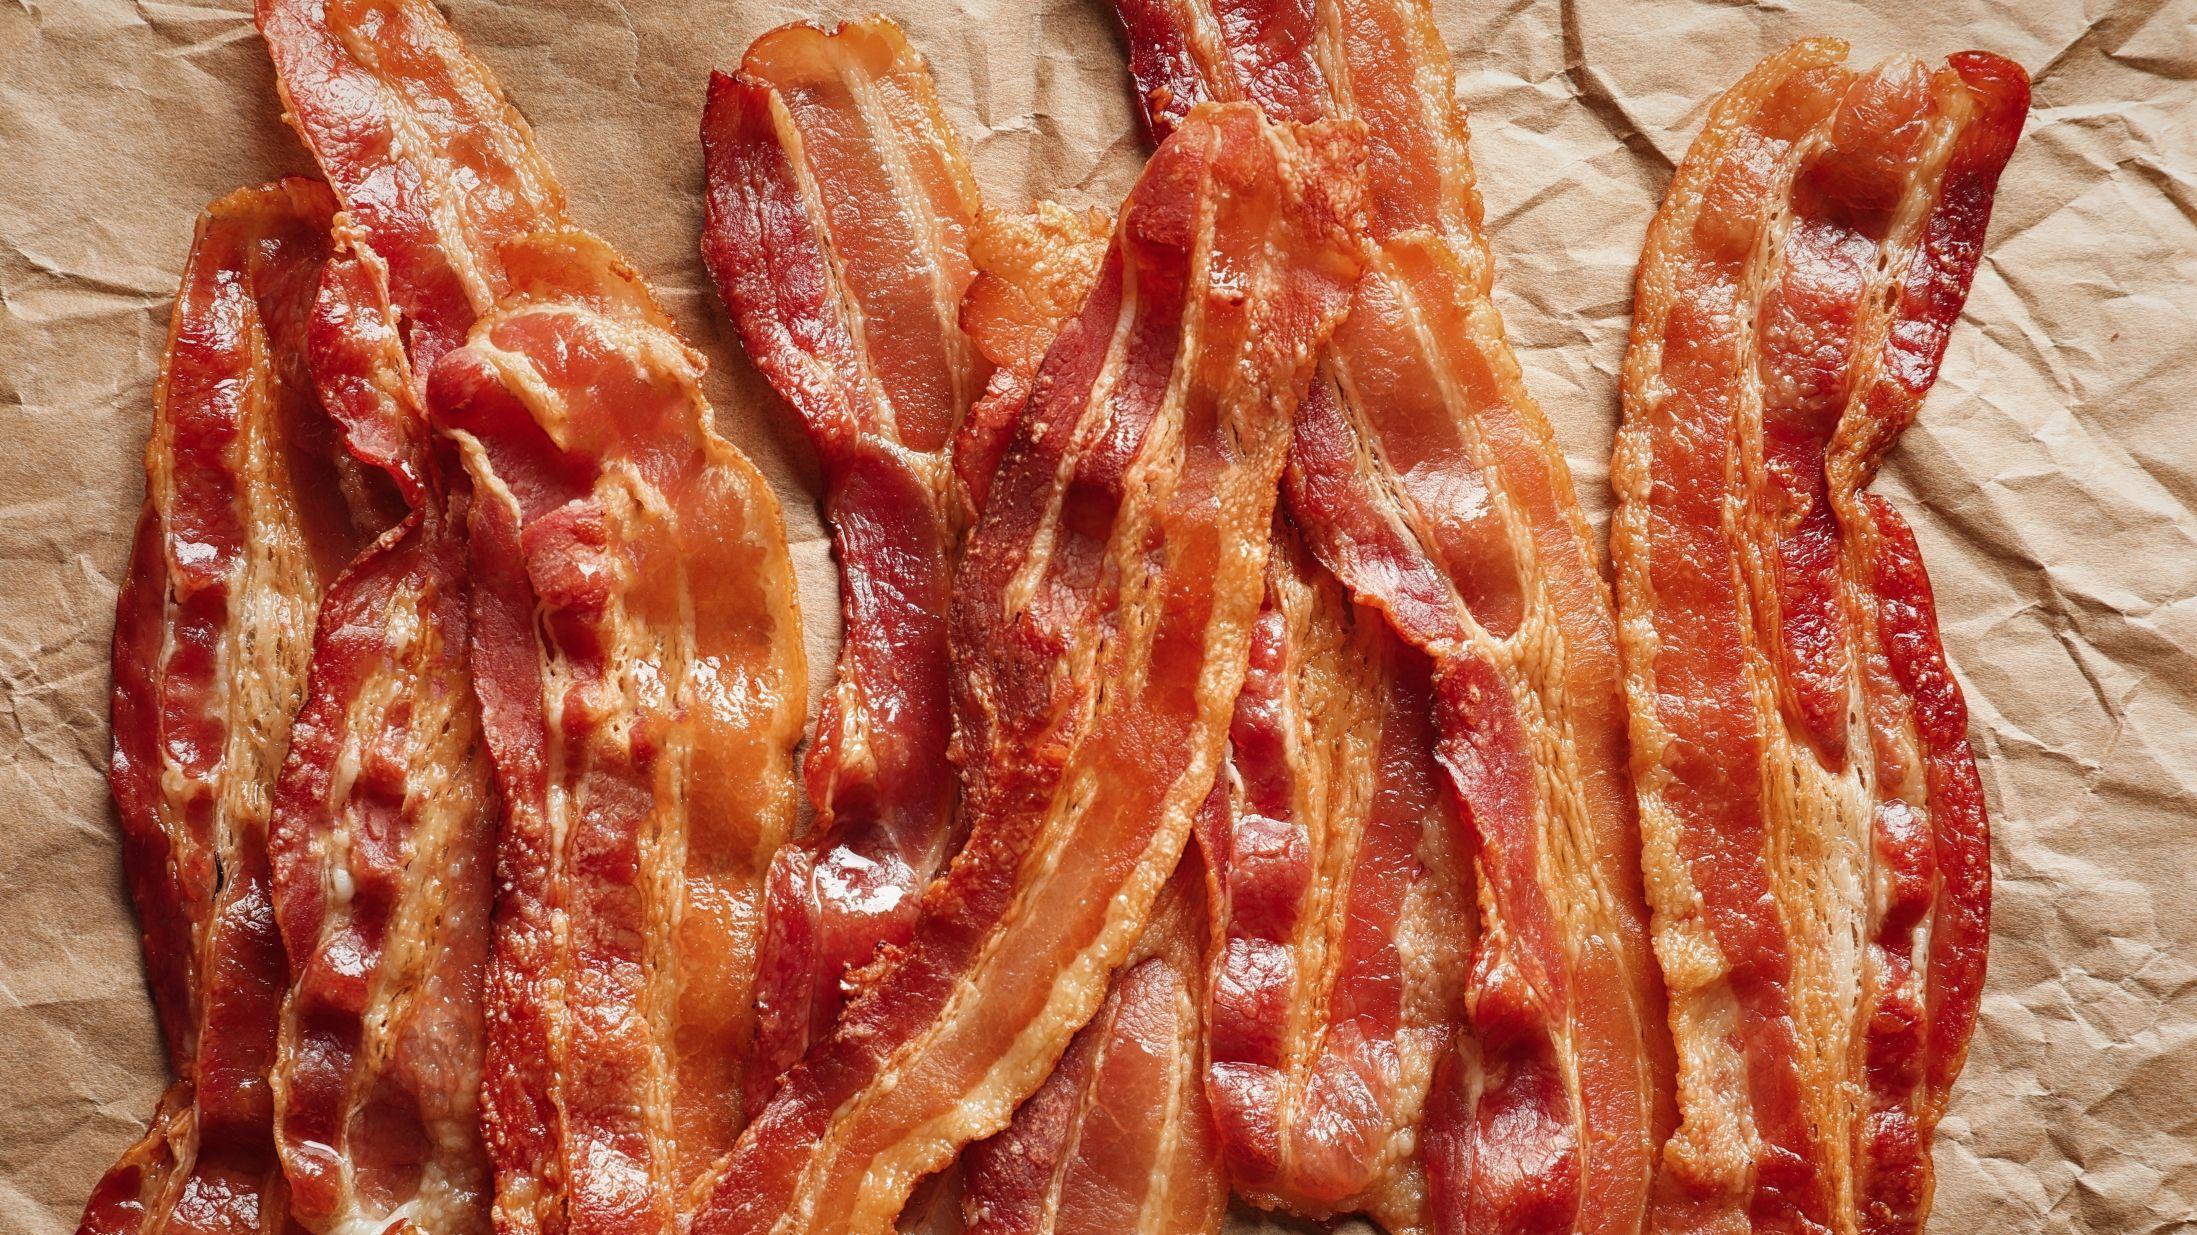 SAFTIG: Beyond Meat skal nå prøve å produsere en kjøttfri-versjon av baconet. MERK: Dette er vanlig bacon og ikke en kjøttfri versjon. FOTO: Shutterstock / NTB